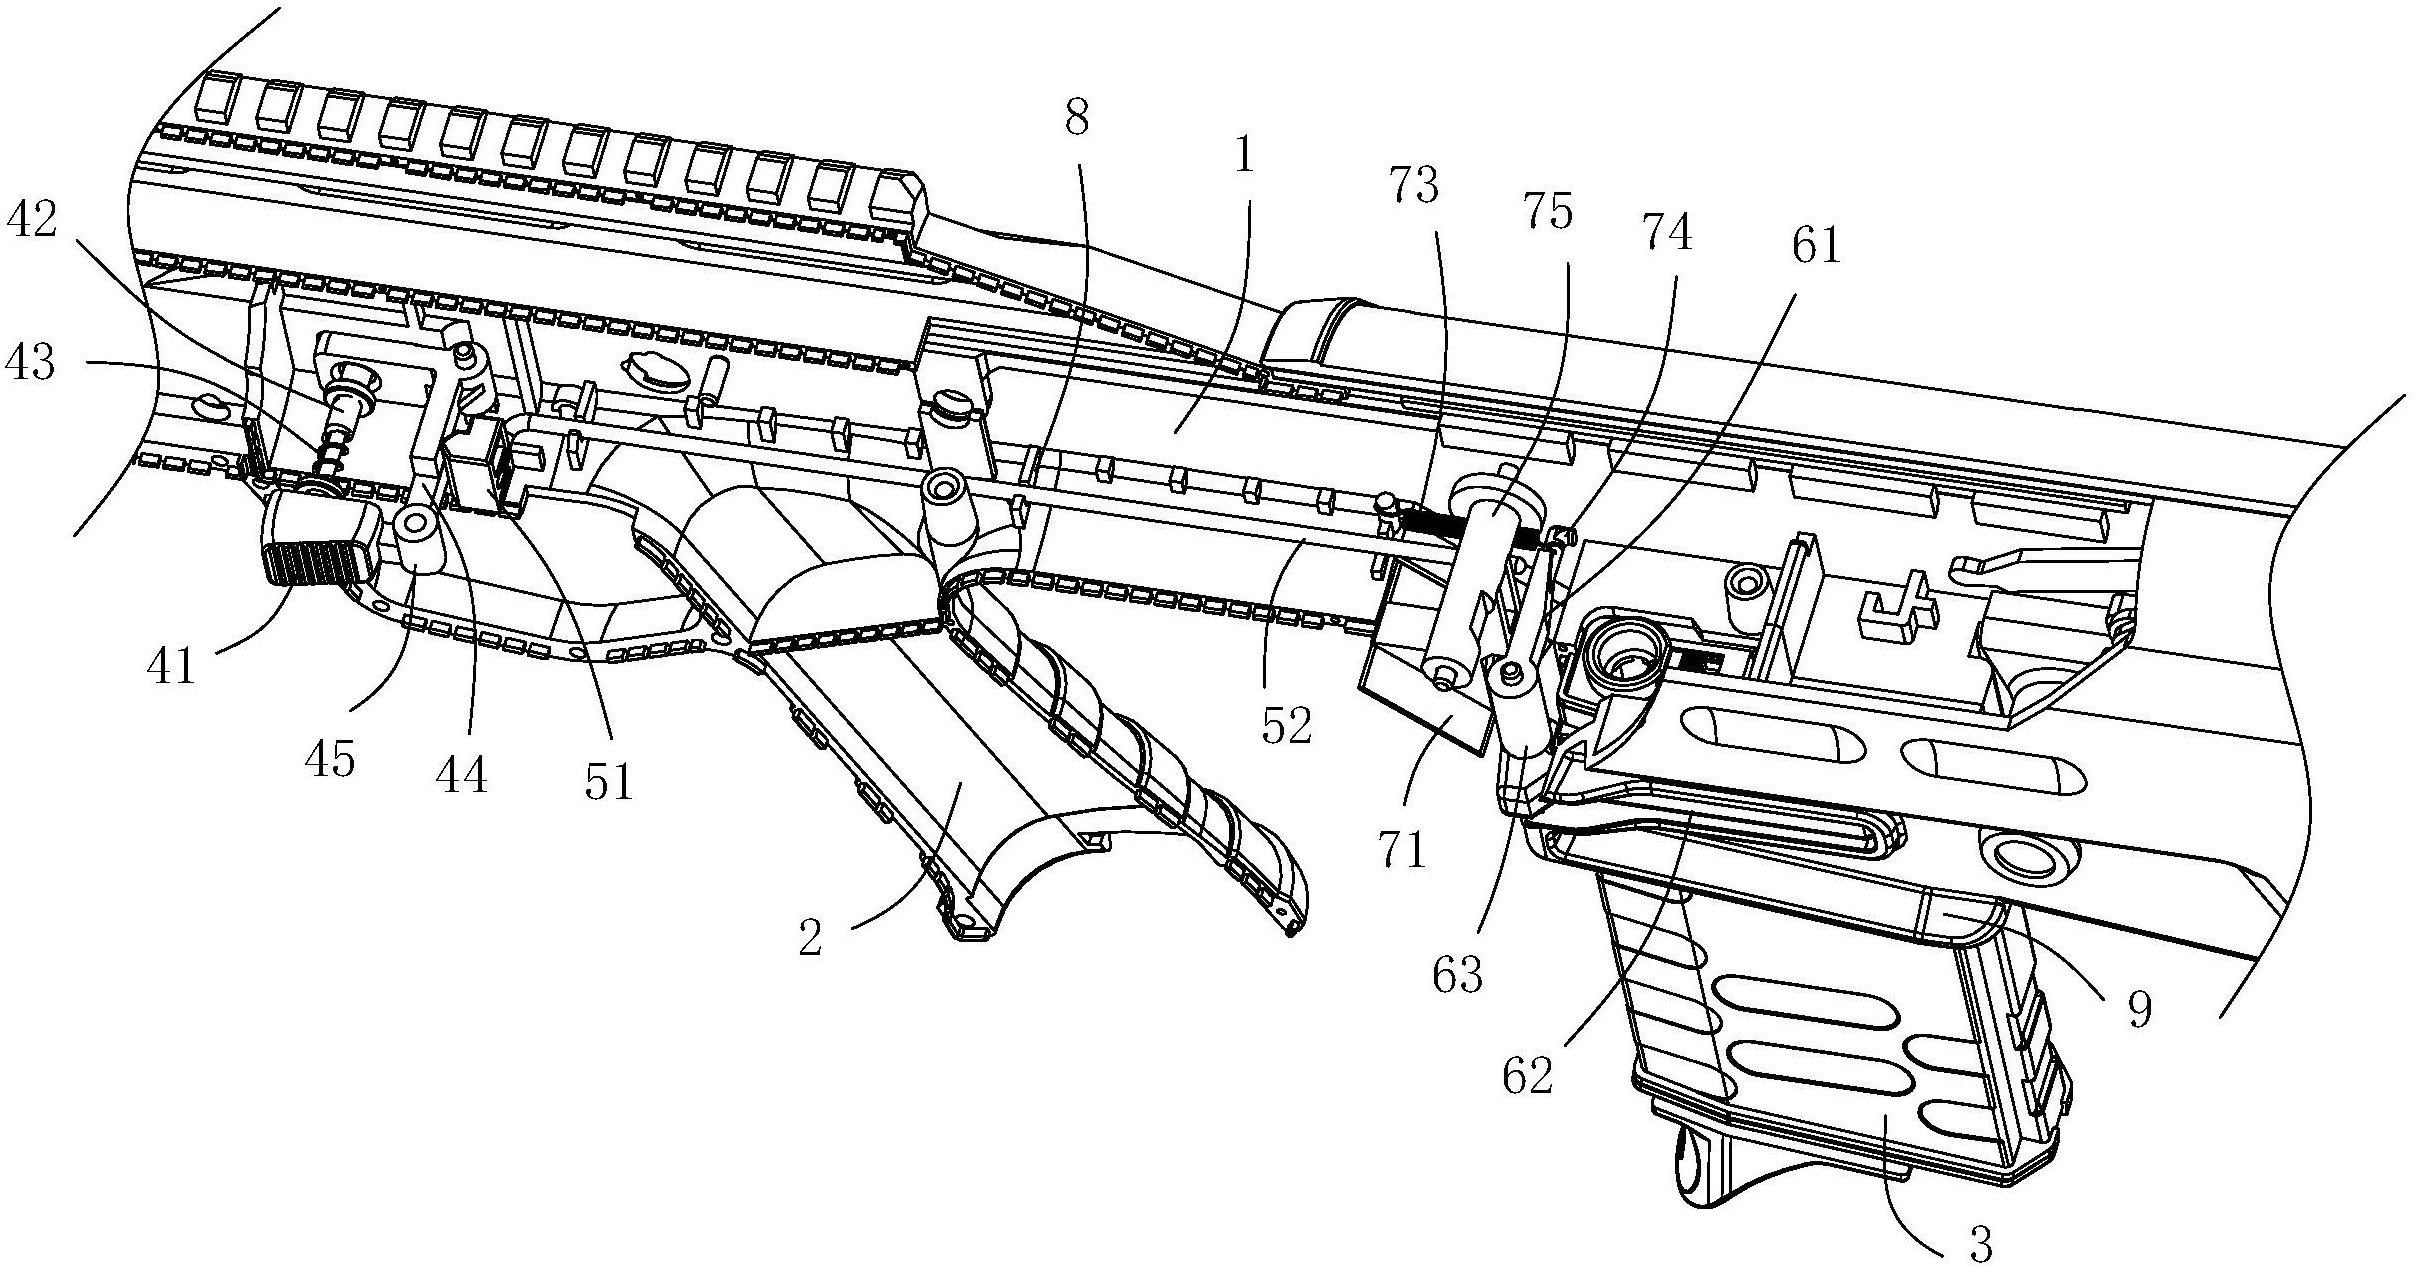 本发明公开了一种玩具枪,包括枪身,设置于枪身上的弹匣插槽和可分离的